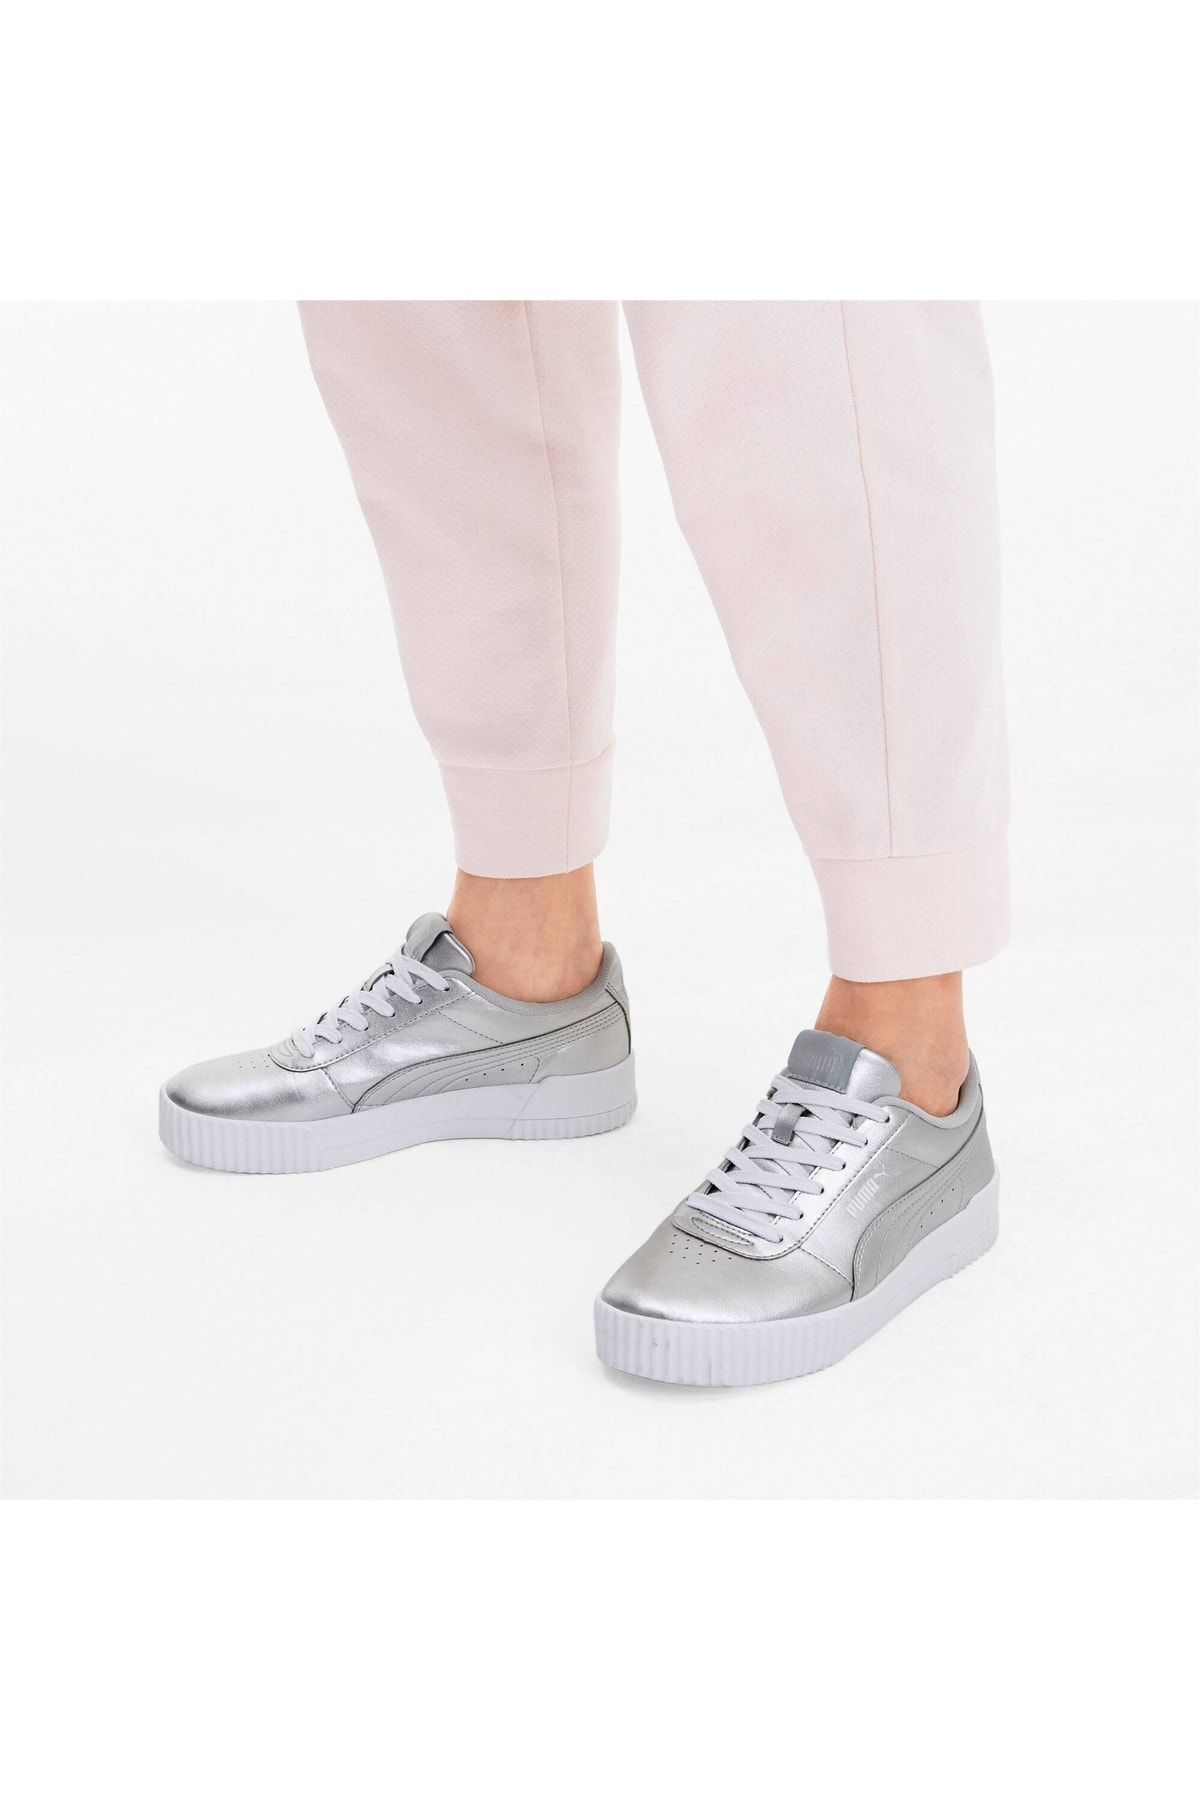 Puma CARINA METALLIC-1 Gümüş Kadın Sneaker Ayakkabı 100547386